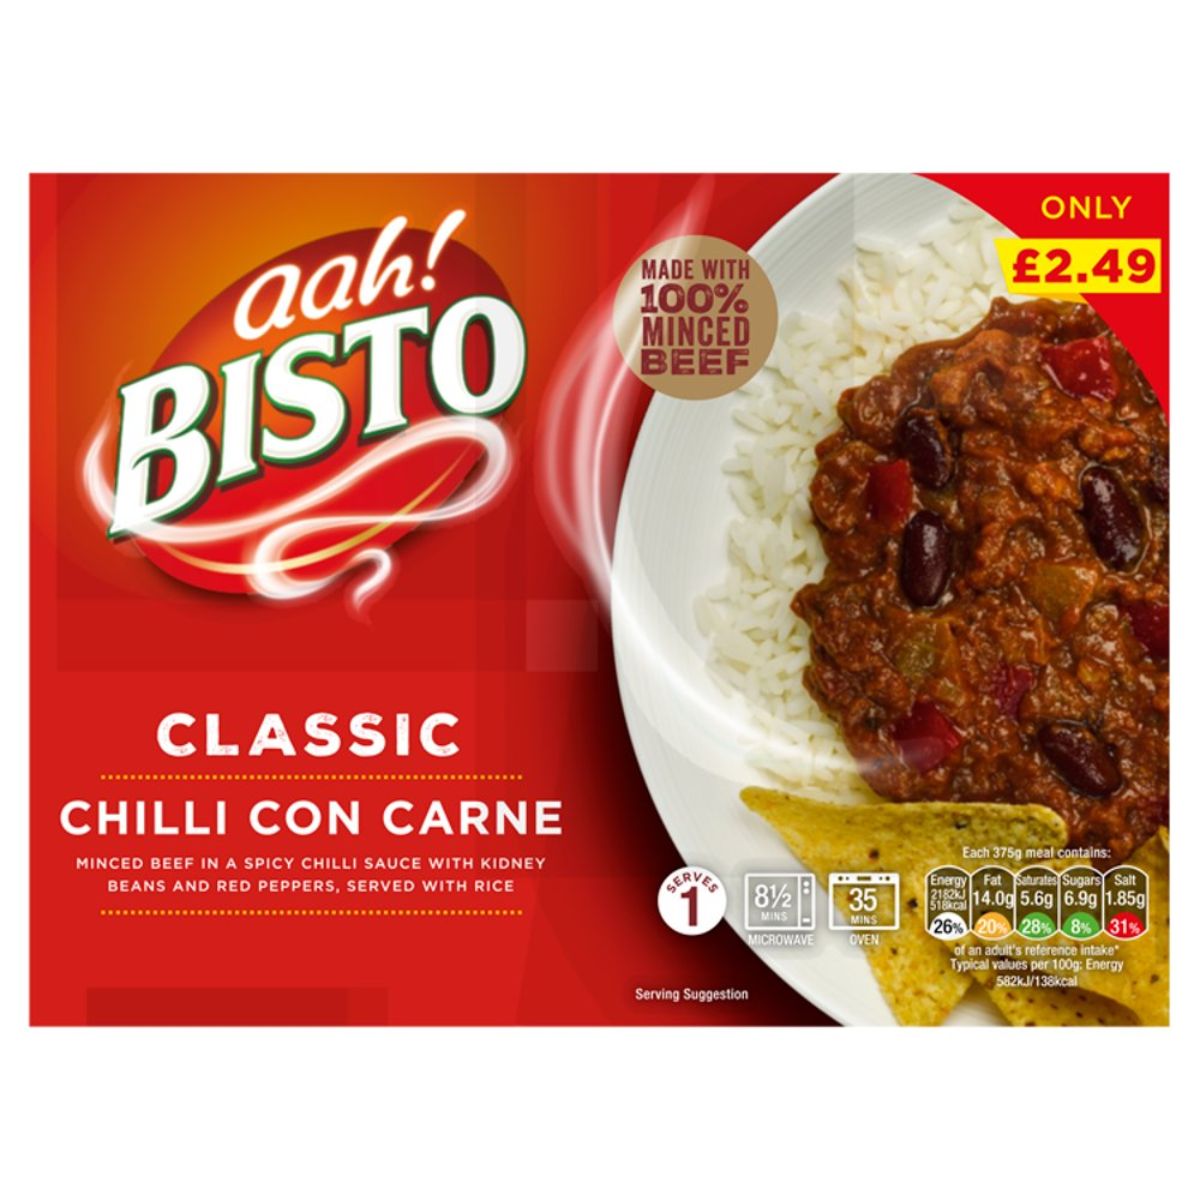 A box of Bisto - Classic Chilli Con Carne - 375g.